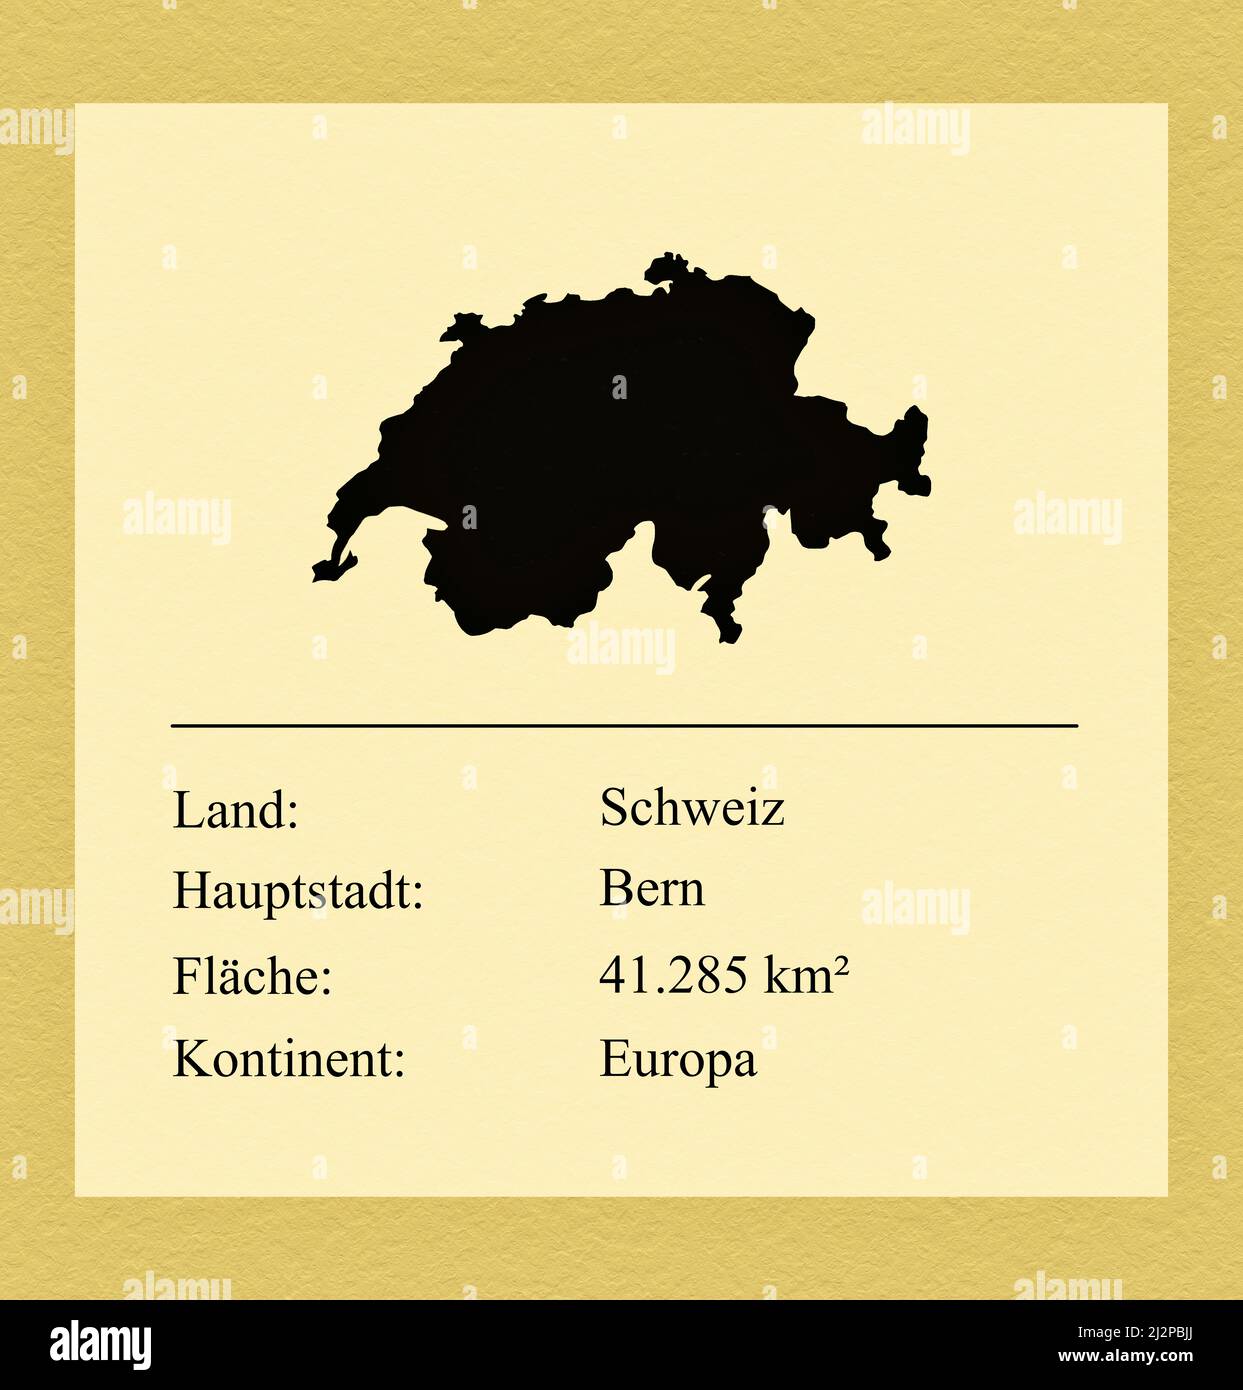 Umrisse des Landes Schweiz, darunter ein kleiner Steckbrief mit Ländernamen, Hauptstadt, Fläche und Kontinent Stock Photo